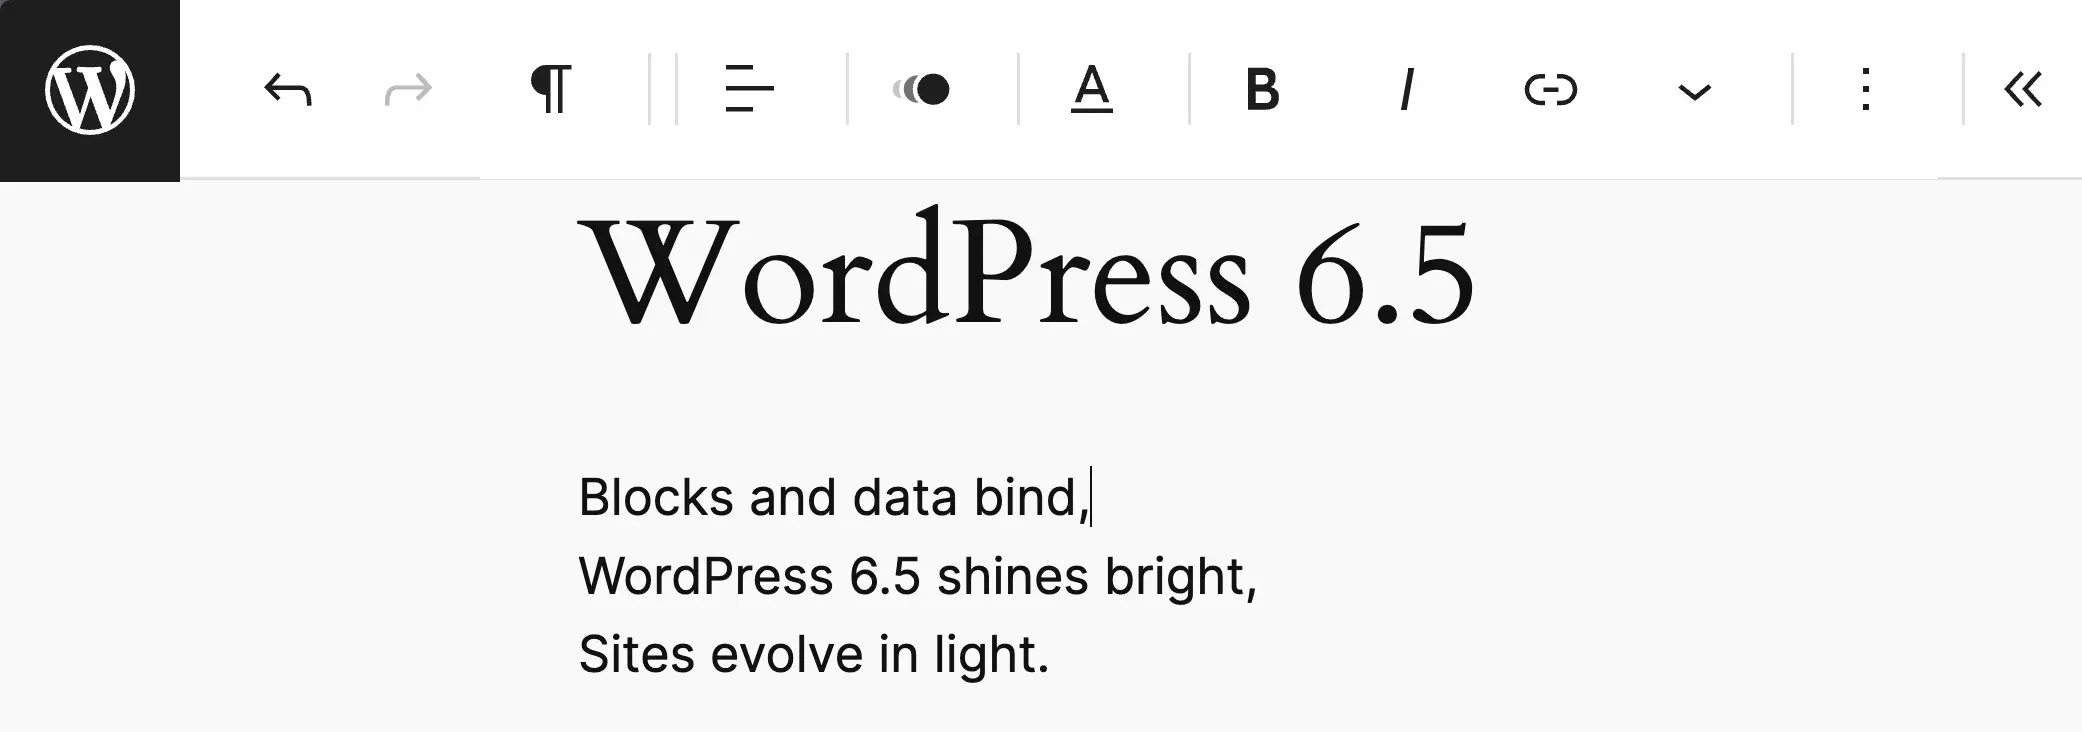 تم تمكين الوضع الحر لـ WordPress 6.5، مما يوضح شريط الأدوات العلوي.